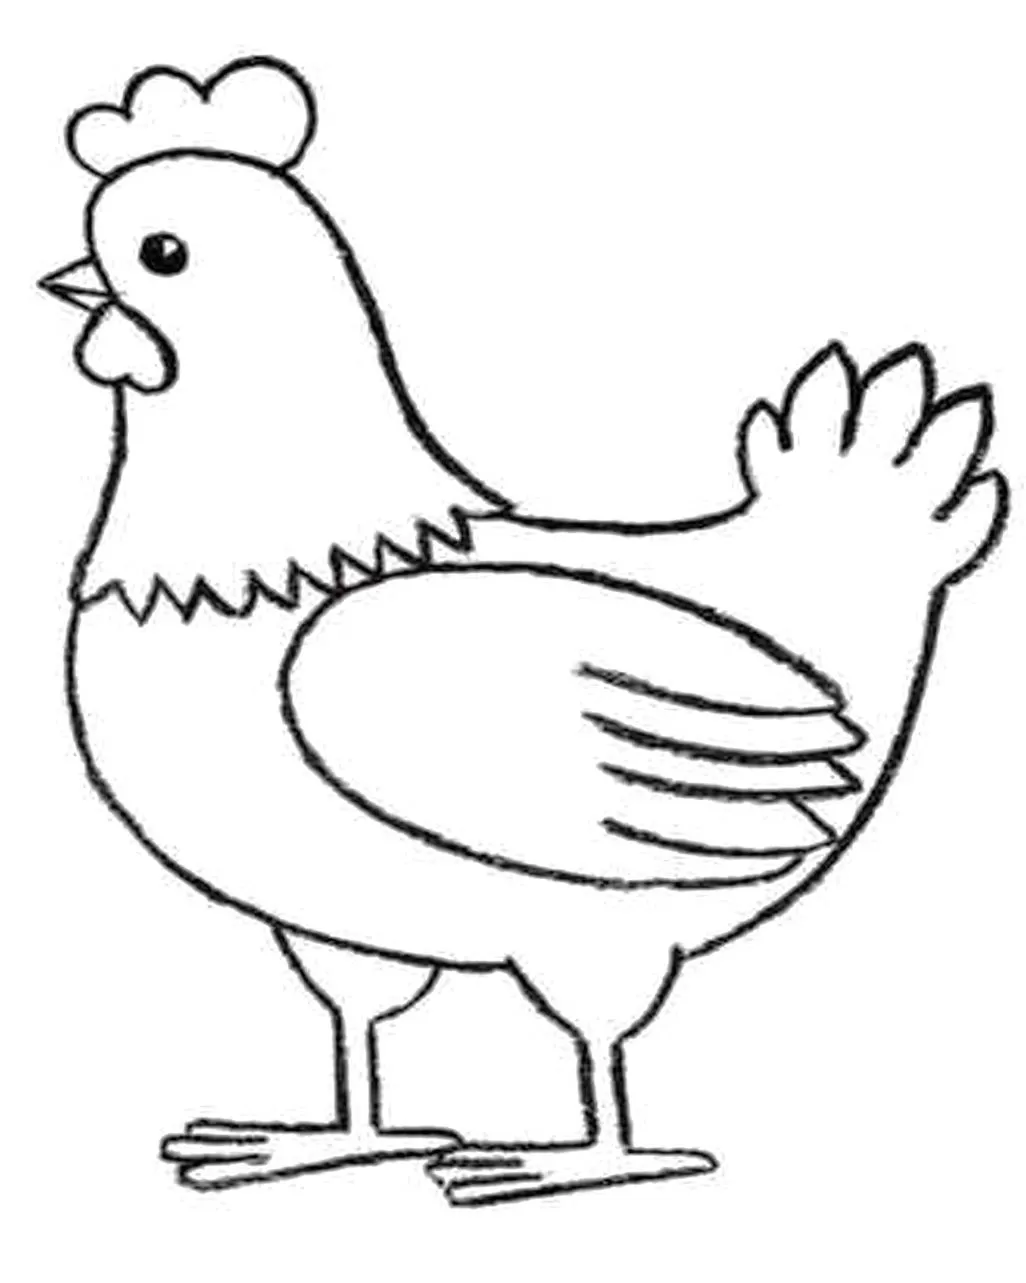 Desenho Para Colorir galinha - Imagens Grátis Para Imprimir - img 17550